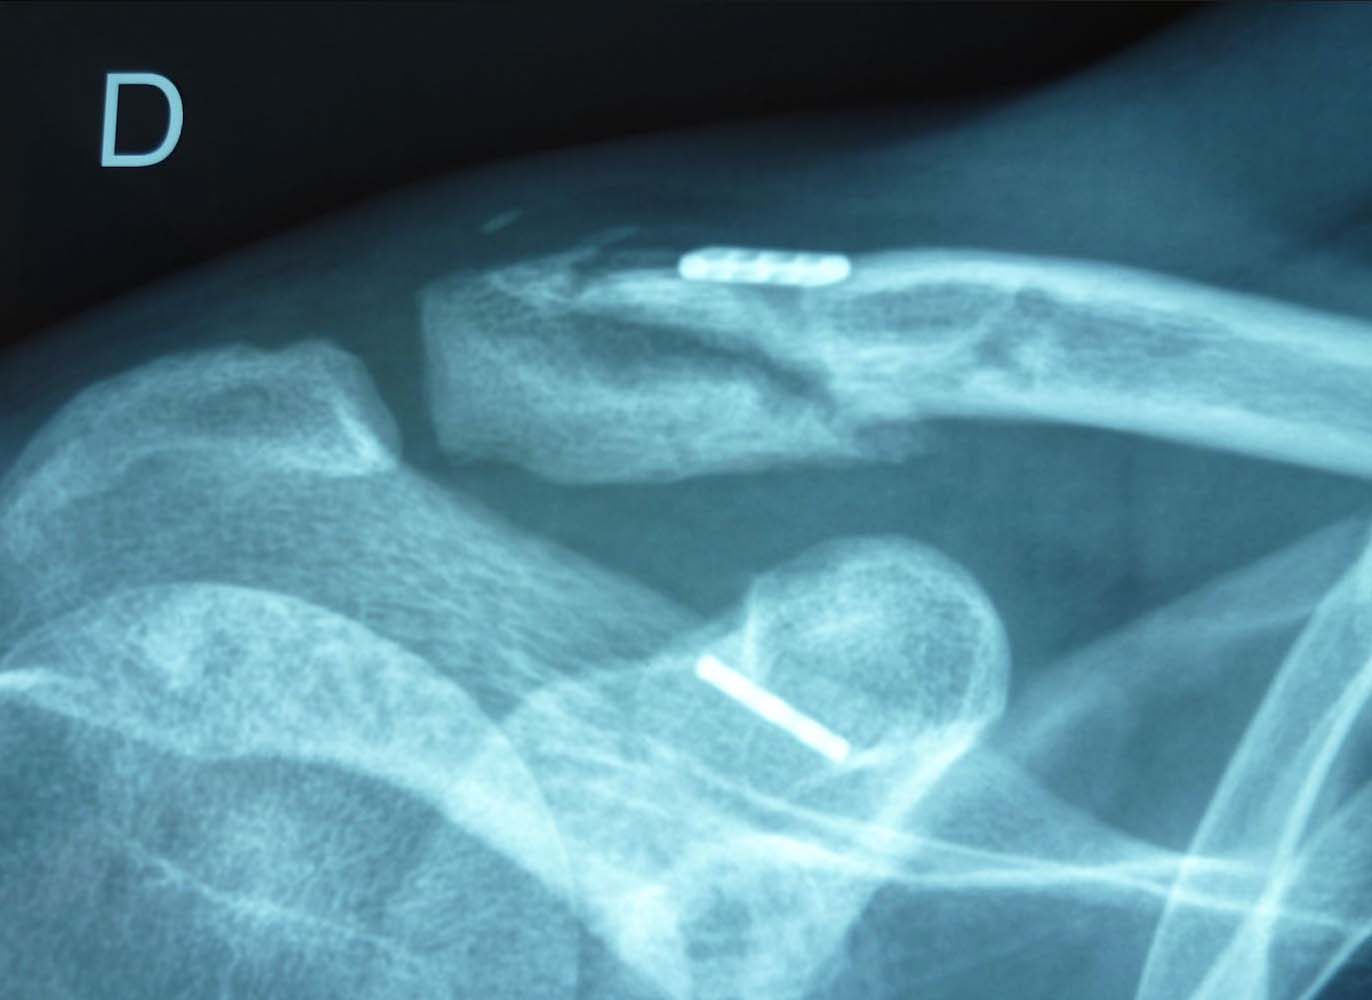 Ostéosynthèse Fracture du 1/4 moyen de la clavicule fractures de l'épaule traumatisme chirurgie par le docteure Christophe Charousset IOAPC Paris